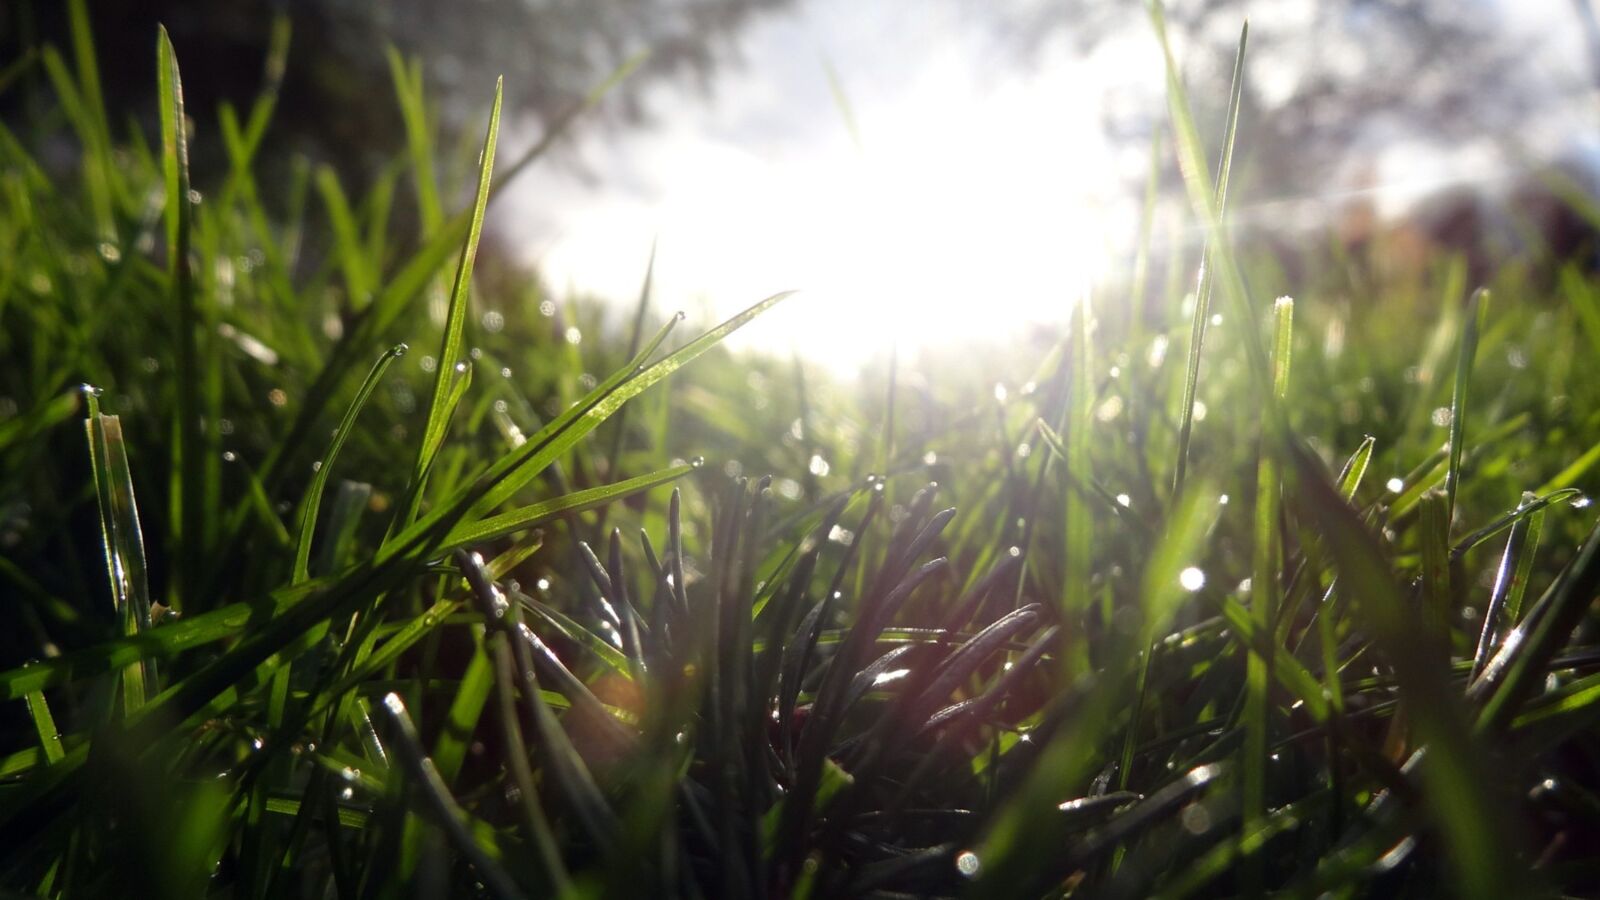 Sony Cyber-shot DSC-HX20V sample photo. Grass, nature, flora photography